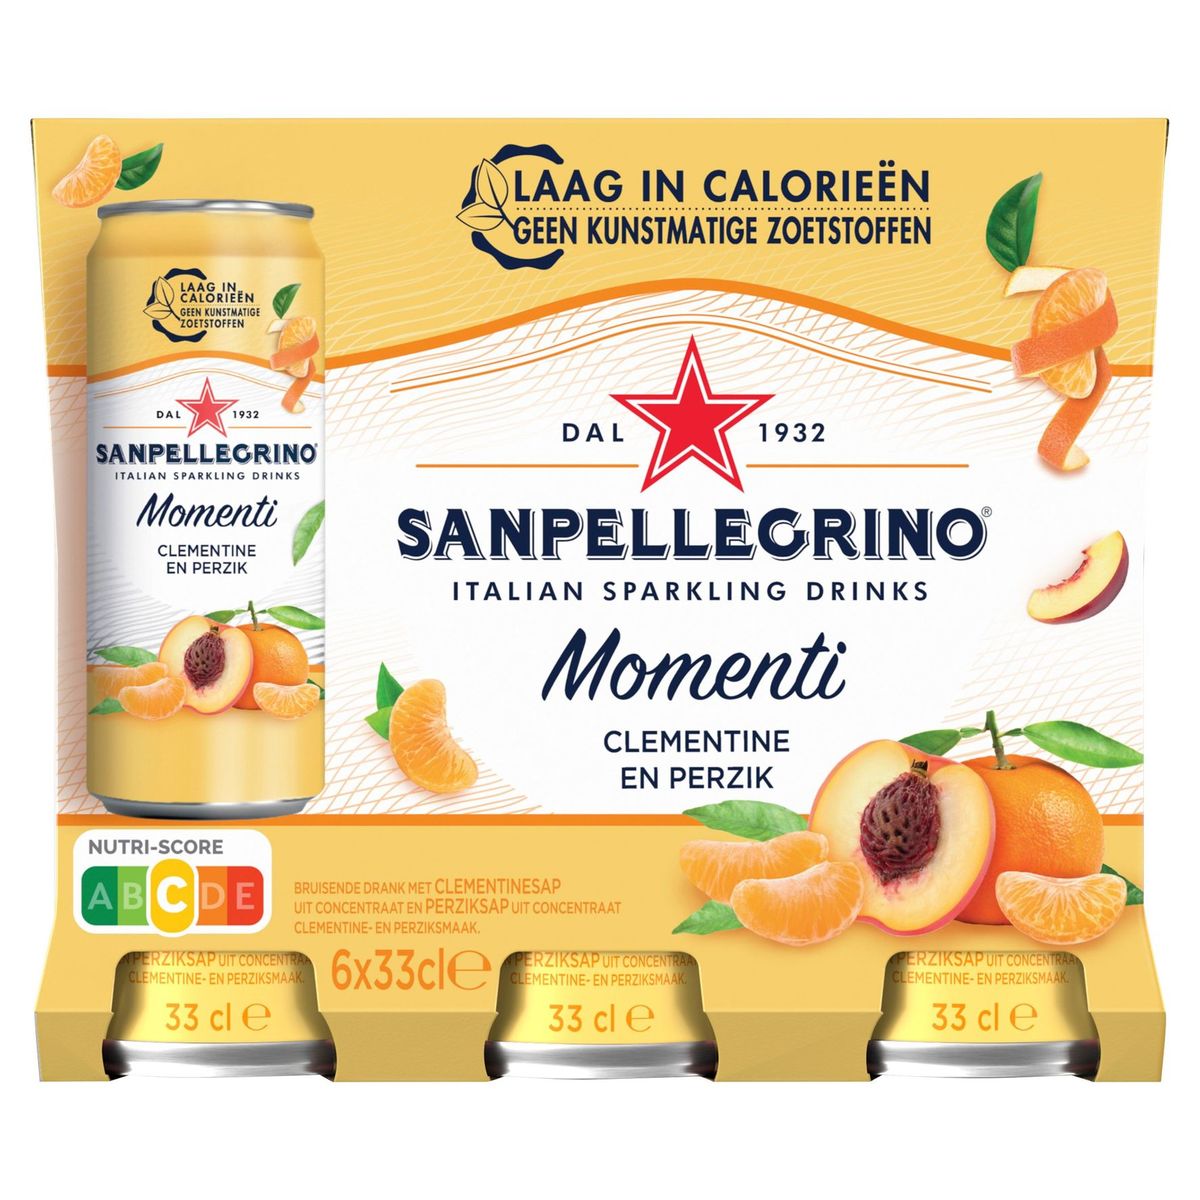 Sanpellegrino Momenti clementine en perzik 6 x 33cl